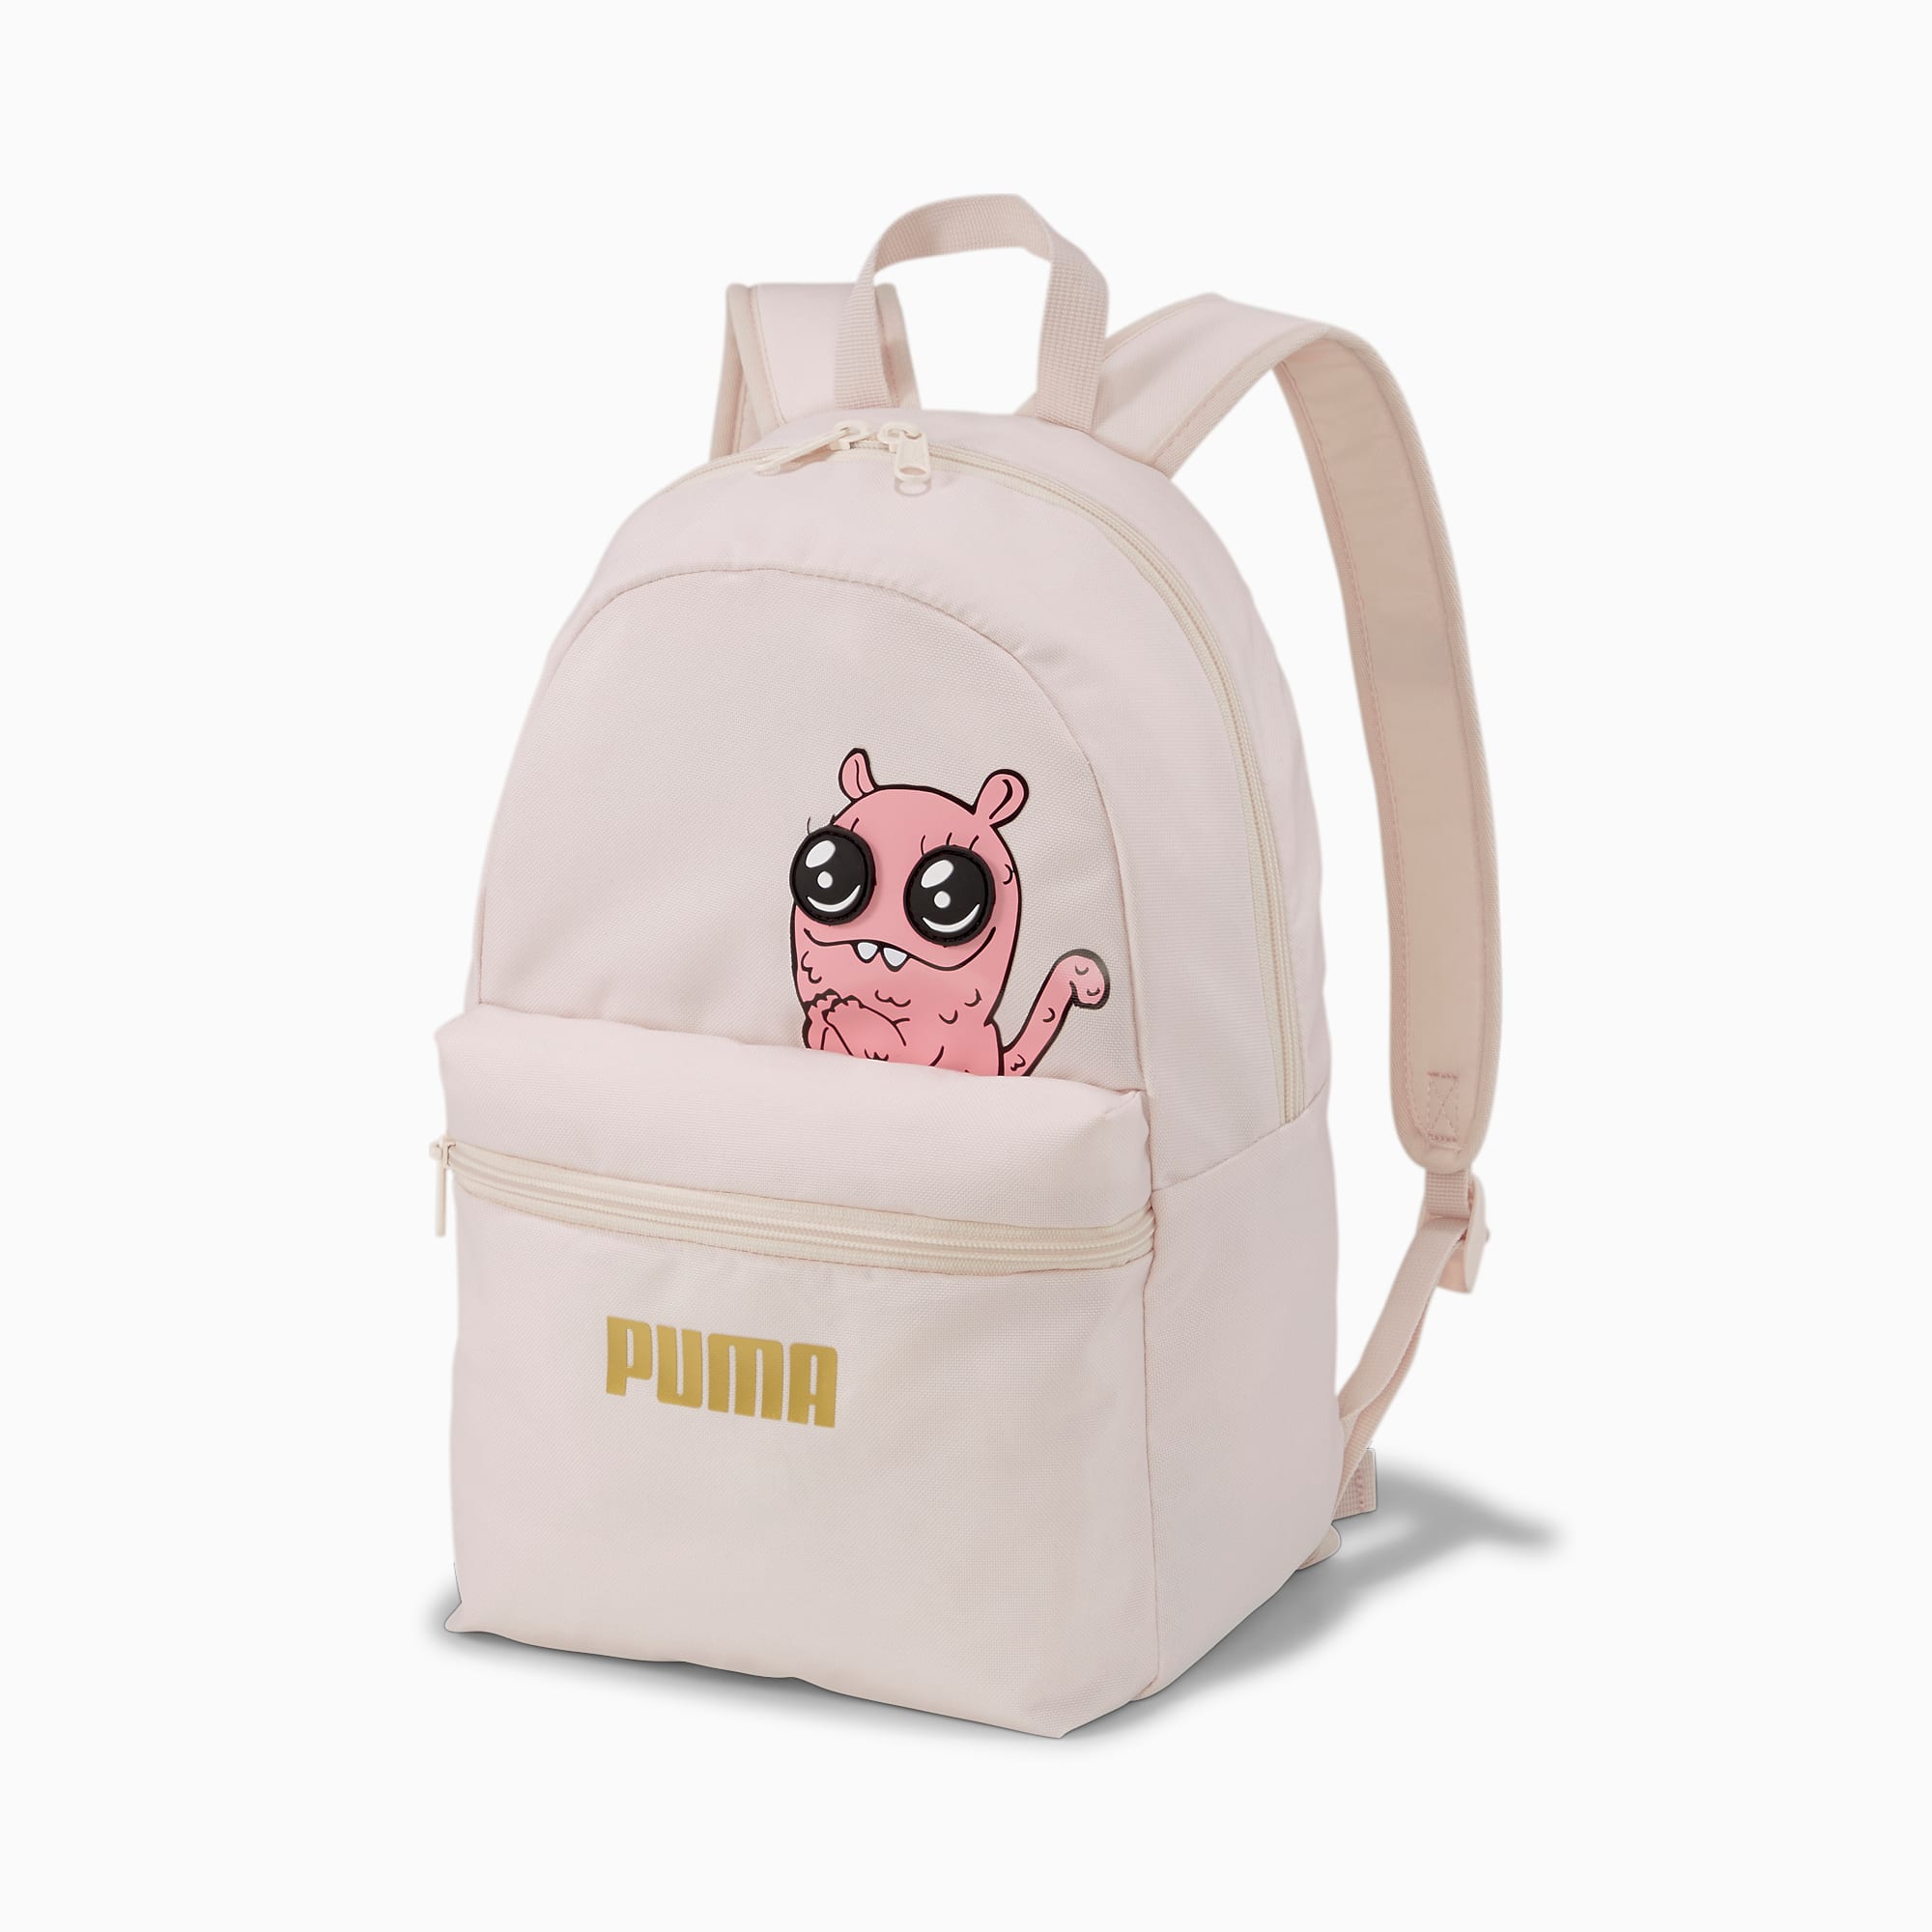 puma backpack kids